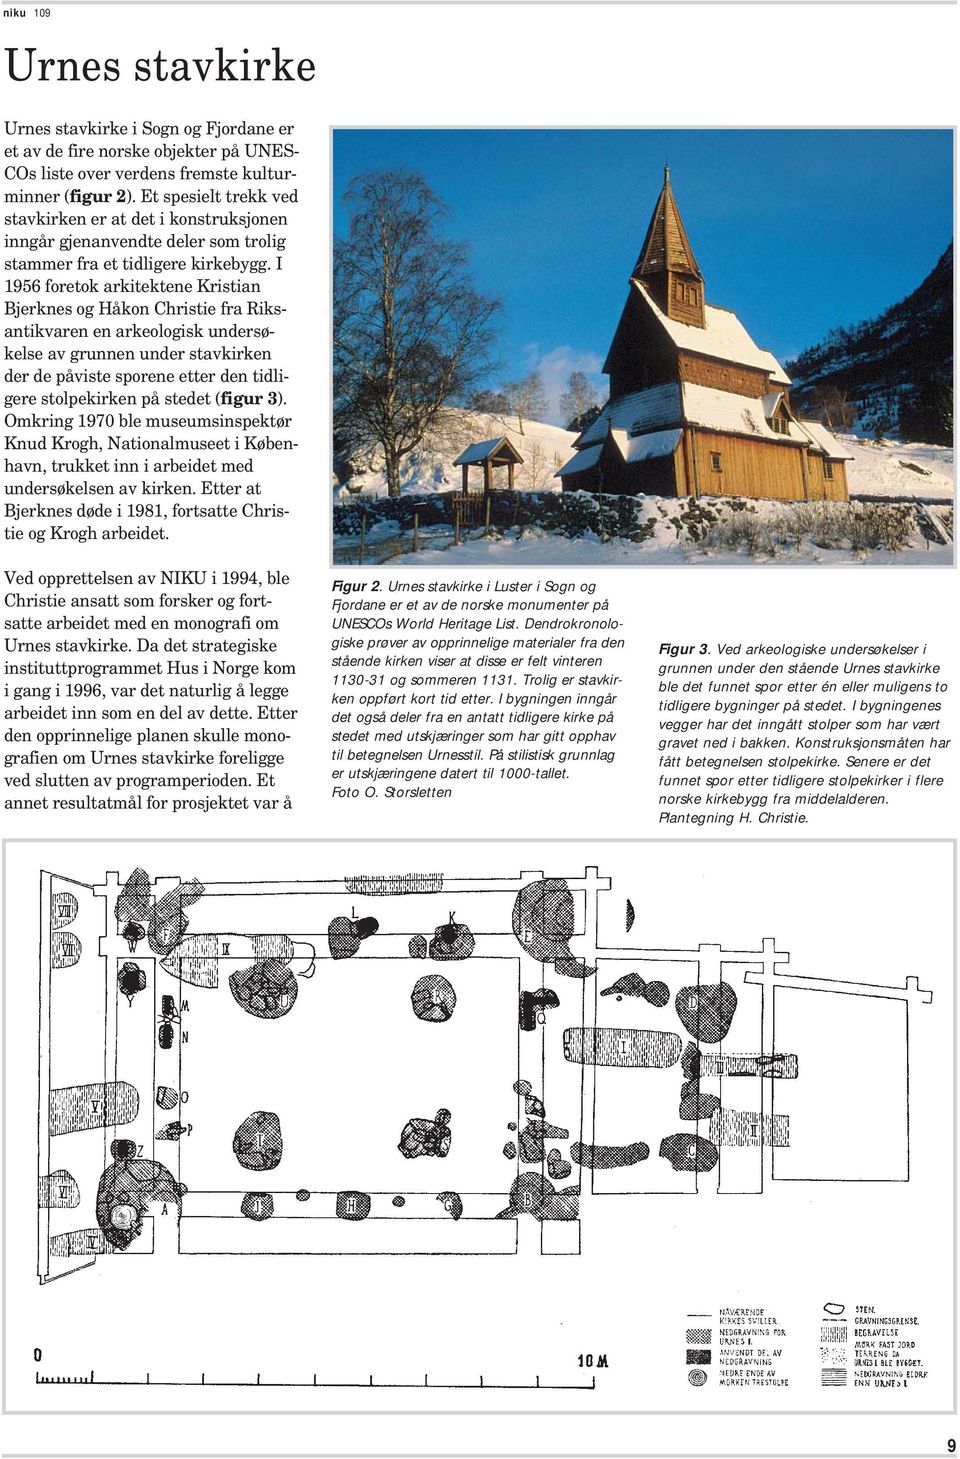 I 1956 foretok arkitektene Kristian Bjerknes og Håkon Christie fra Riksantikvaren en arkeologisk undersøkelse av grunnen under stavkirken der de påviste sporene etter den tidligere stolpekirken på